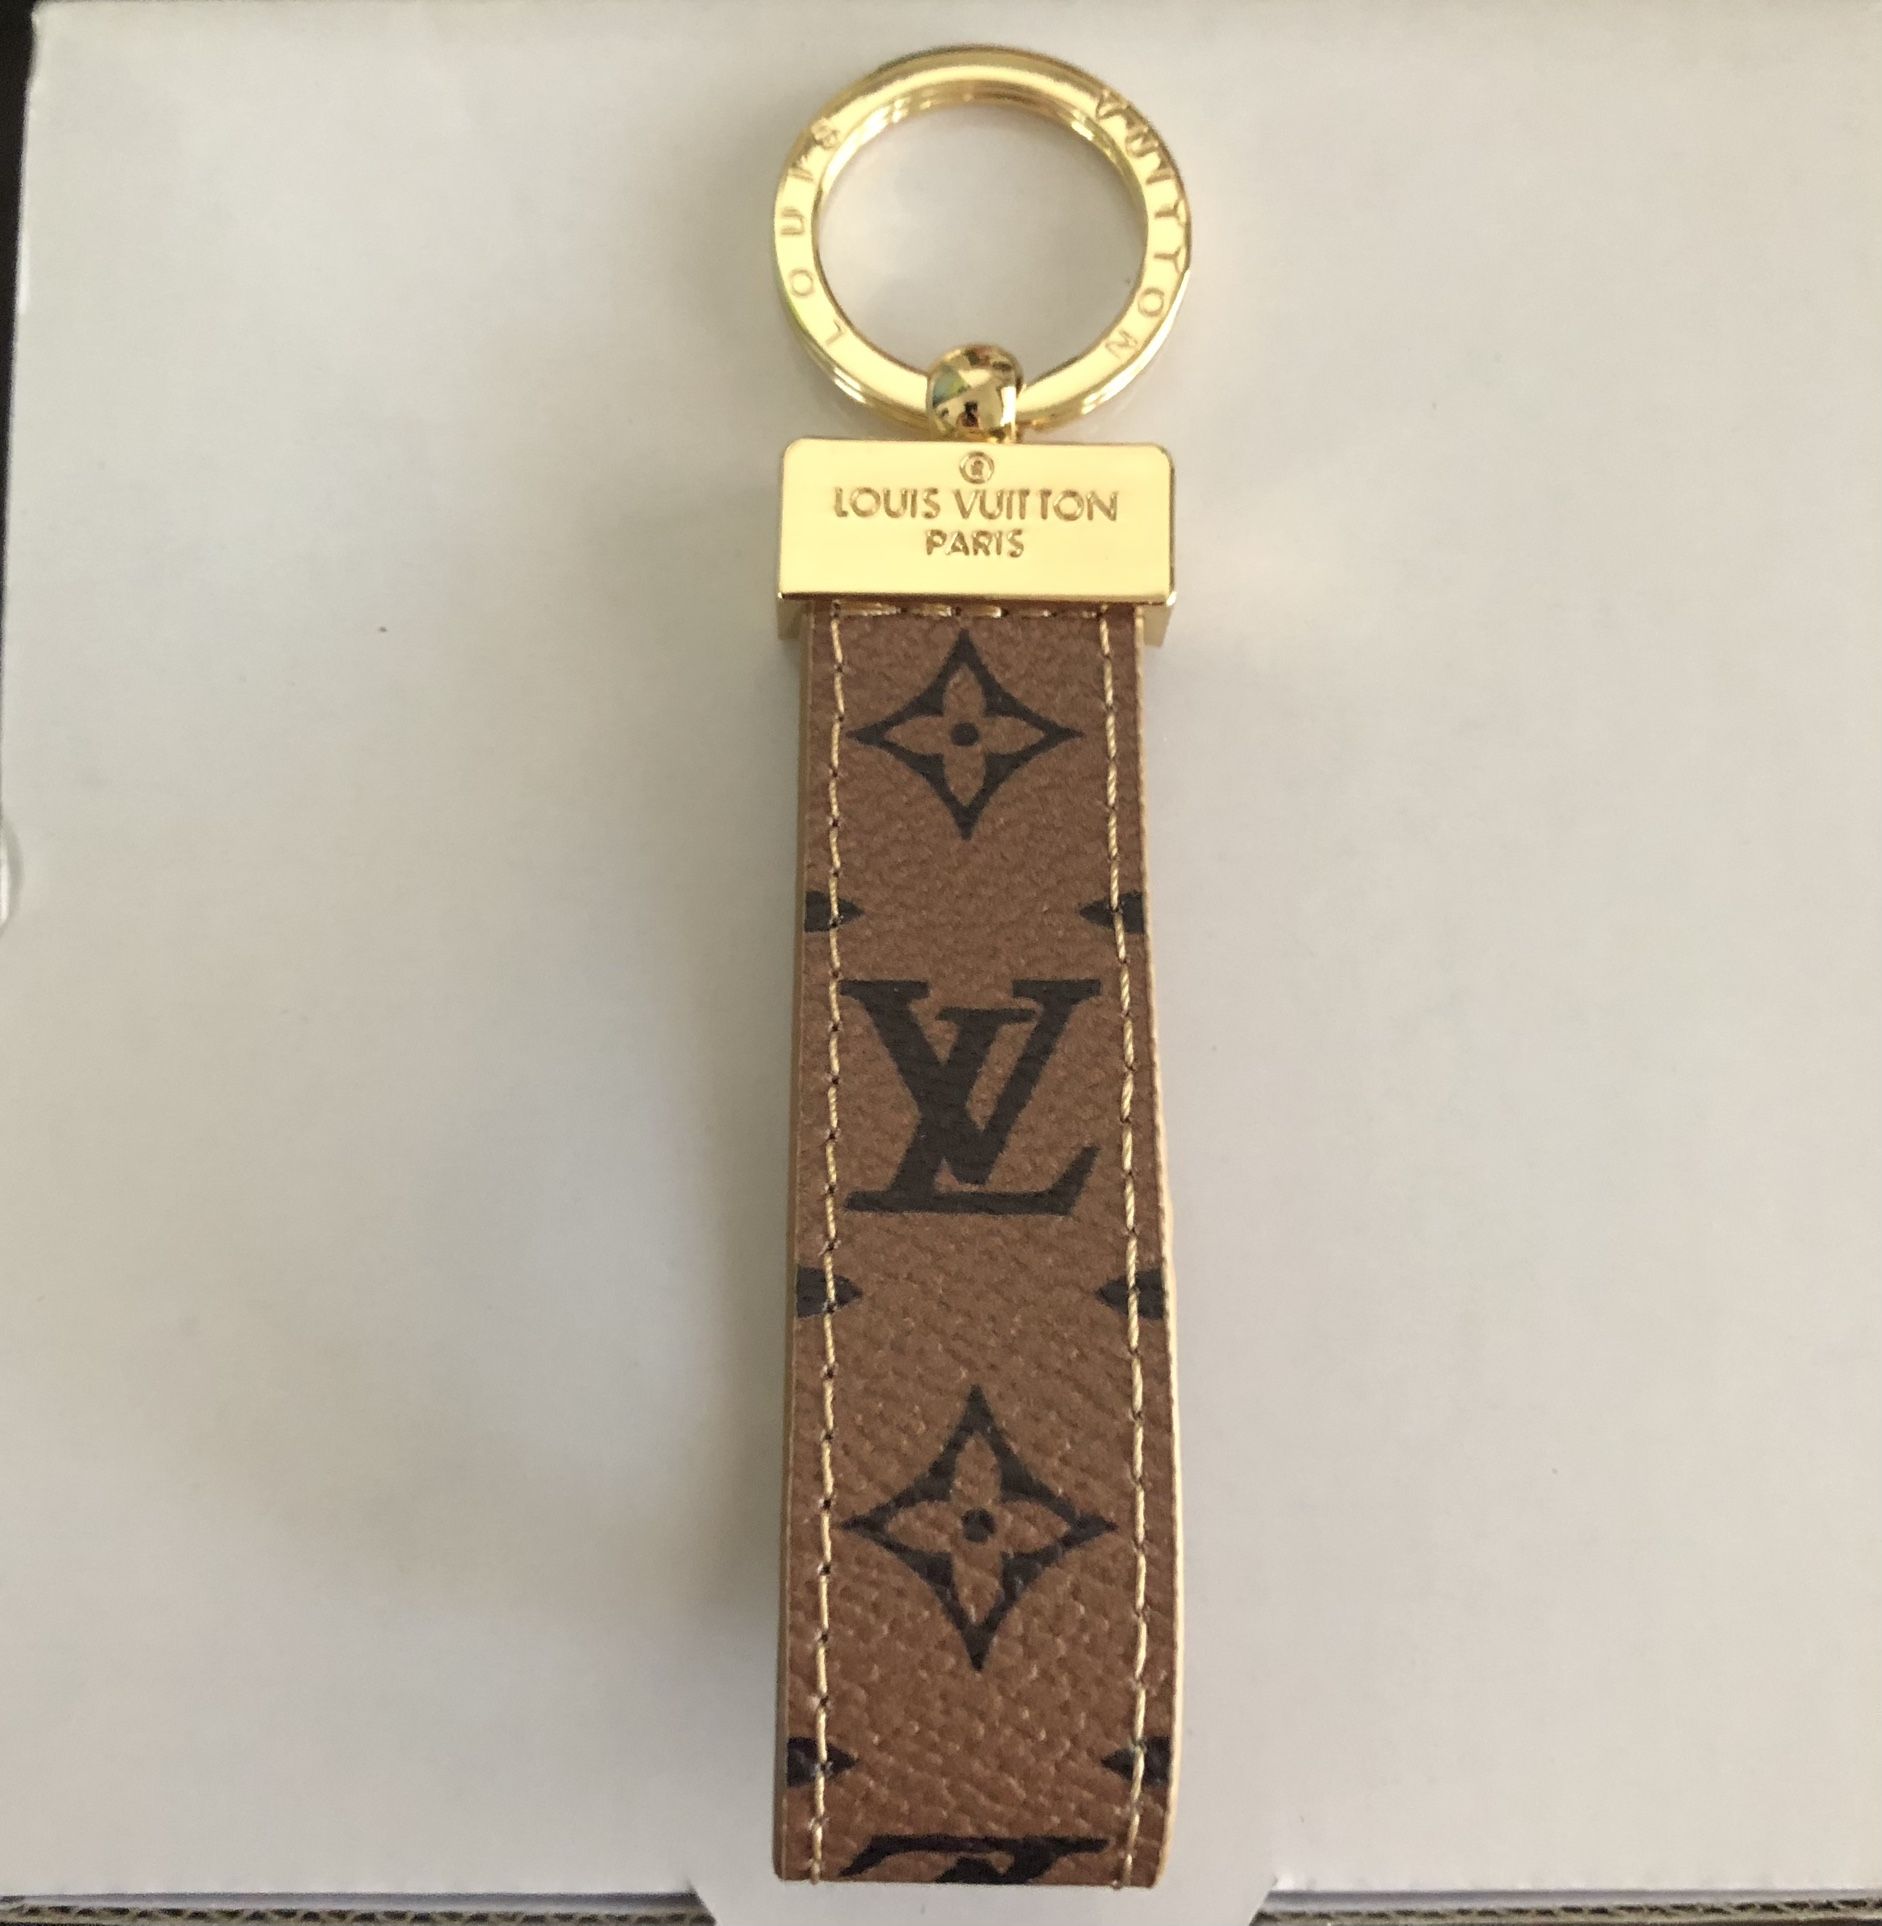 Louis Vuitton Monogram Keyring Dragonne Key Holder M65221